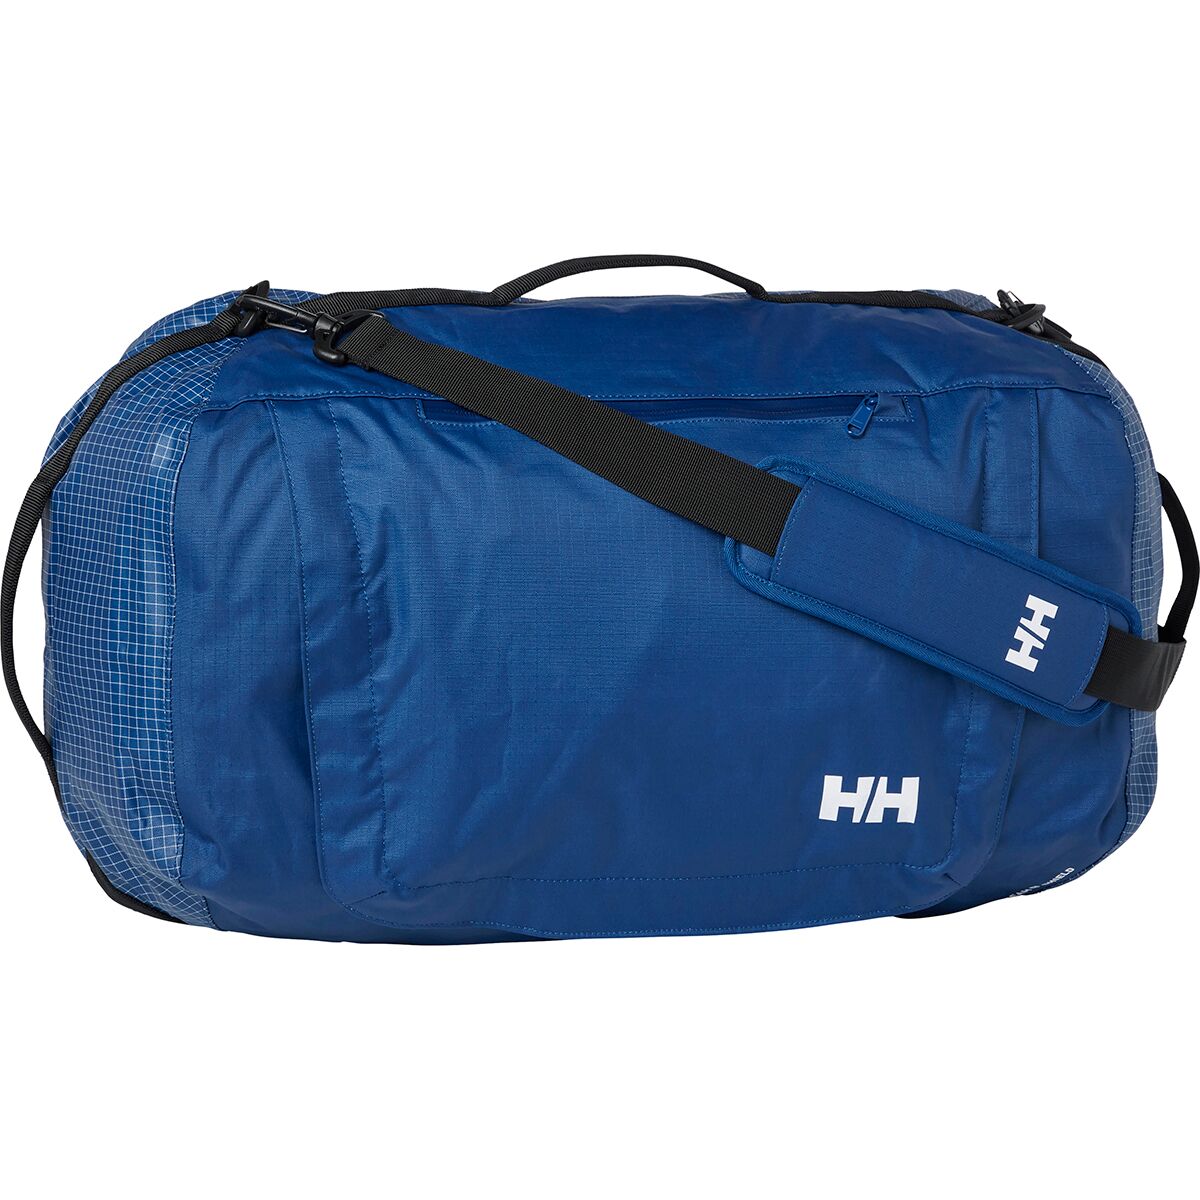 Hightide Waterproof 50L Duffel Bag